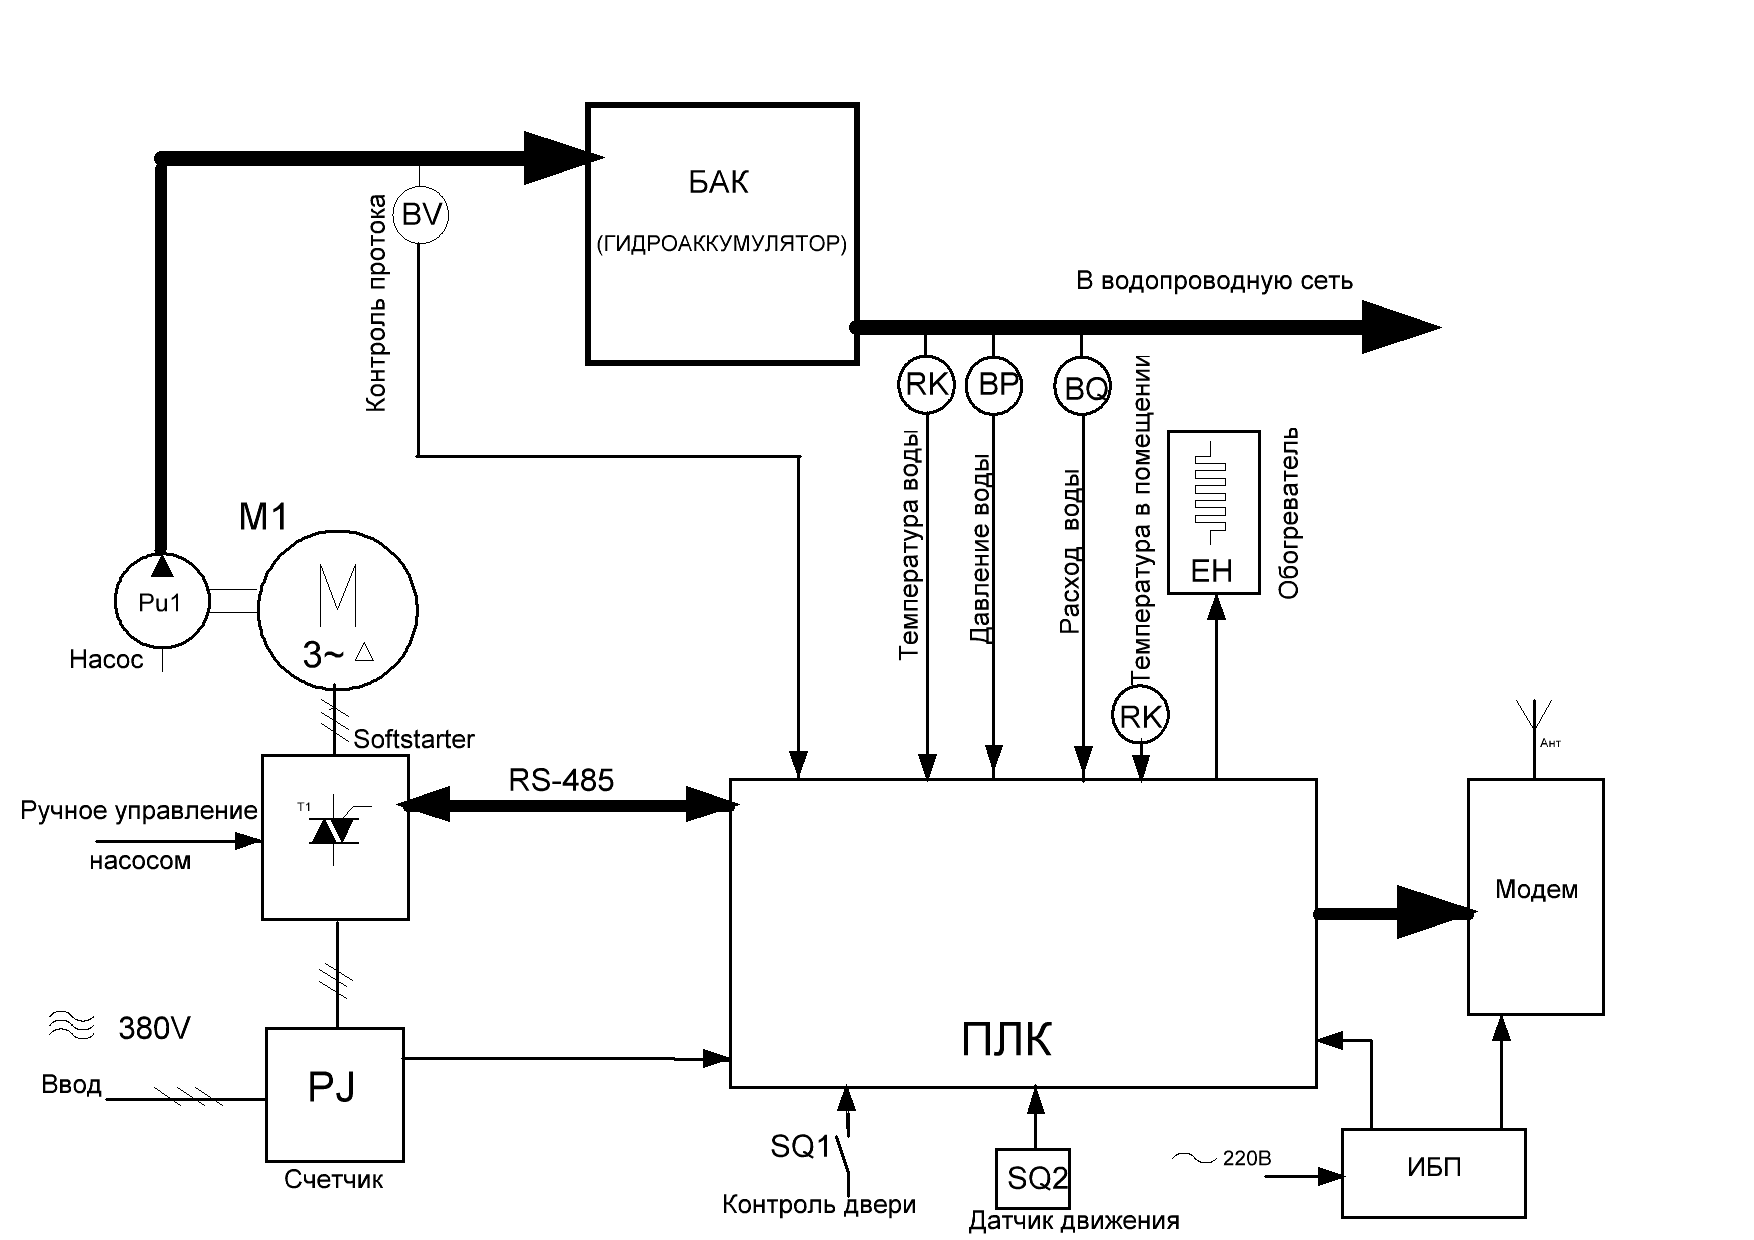 Структурная схема автоматизации скважины